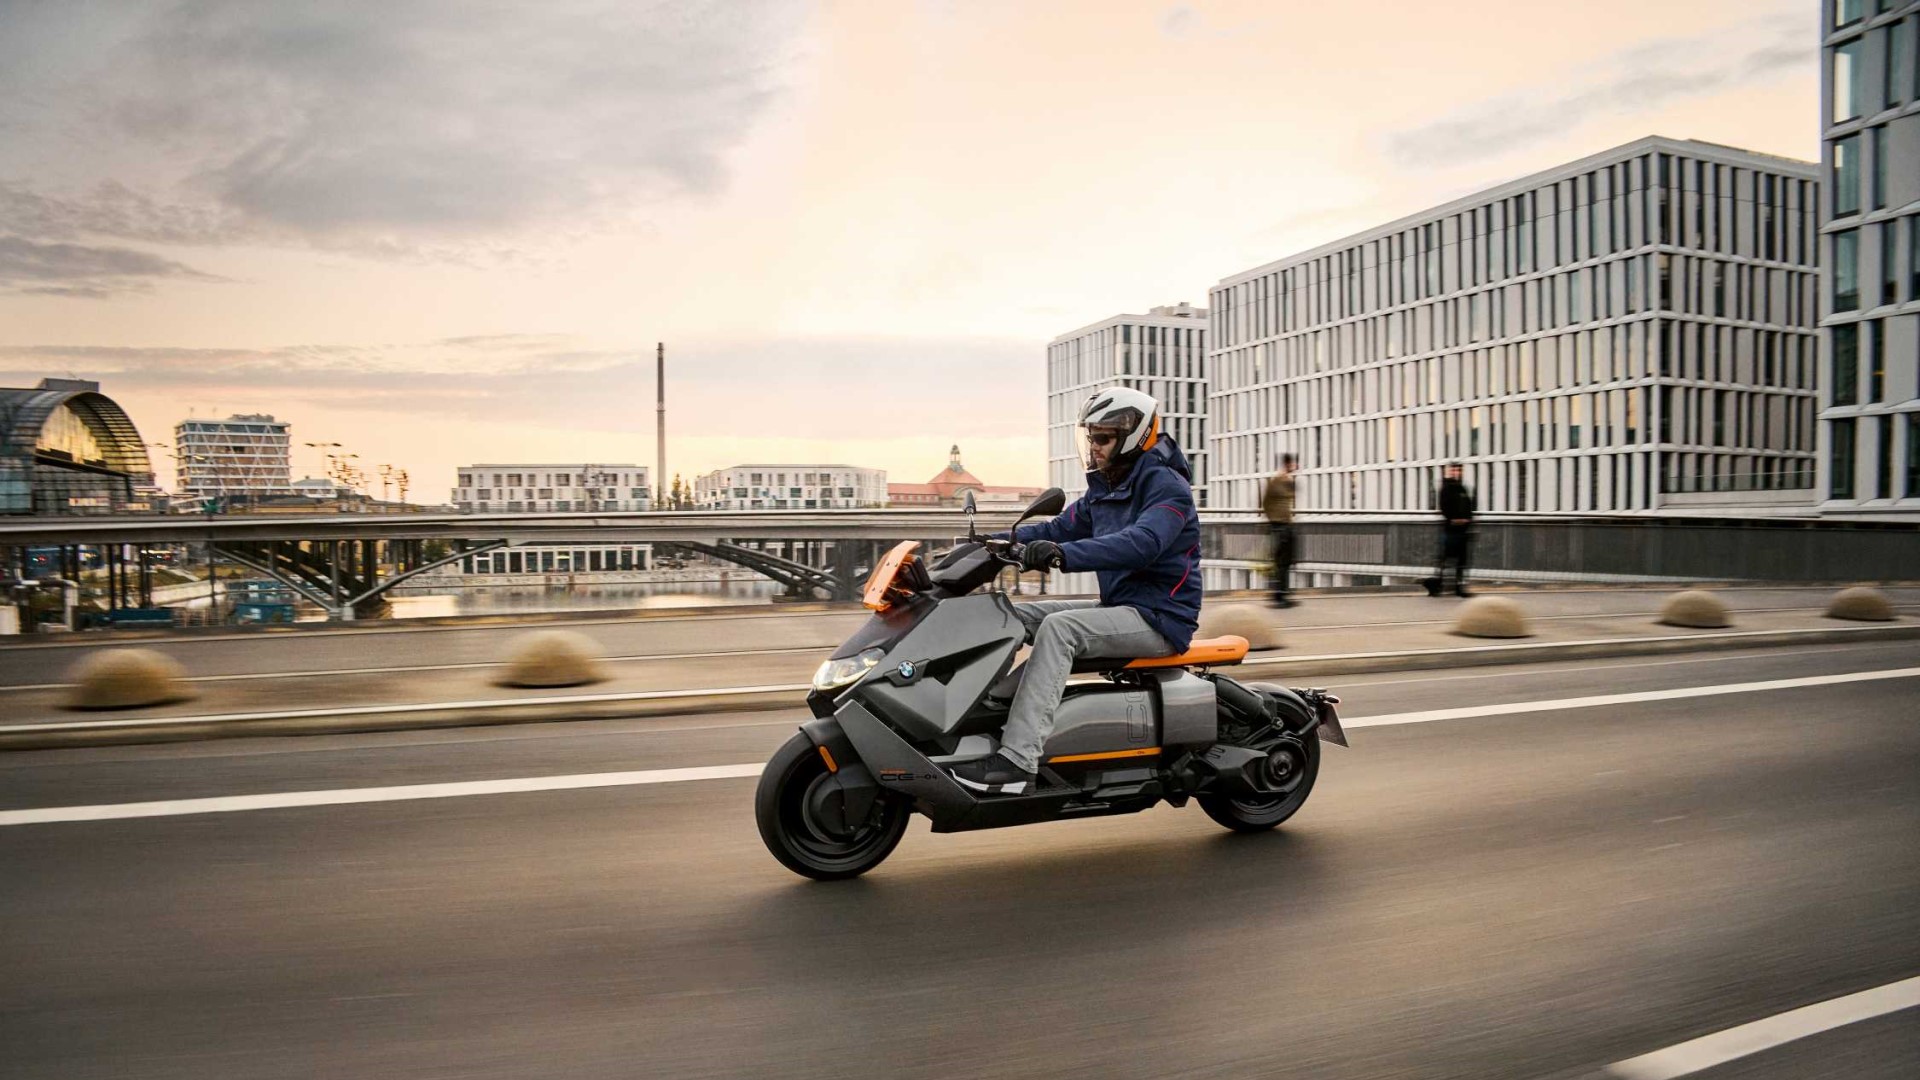 BMW เปิดตัวสกู๊ตเตอร์ไฟฟ้า CE 04 โฉมใหม่จะออกจำหน่ายในปี 2022